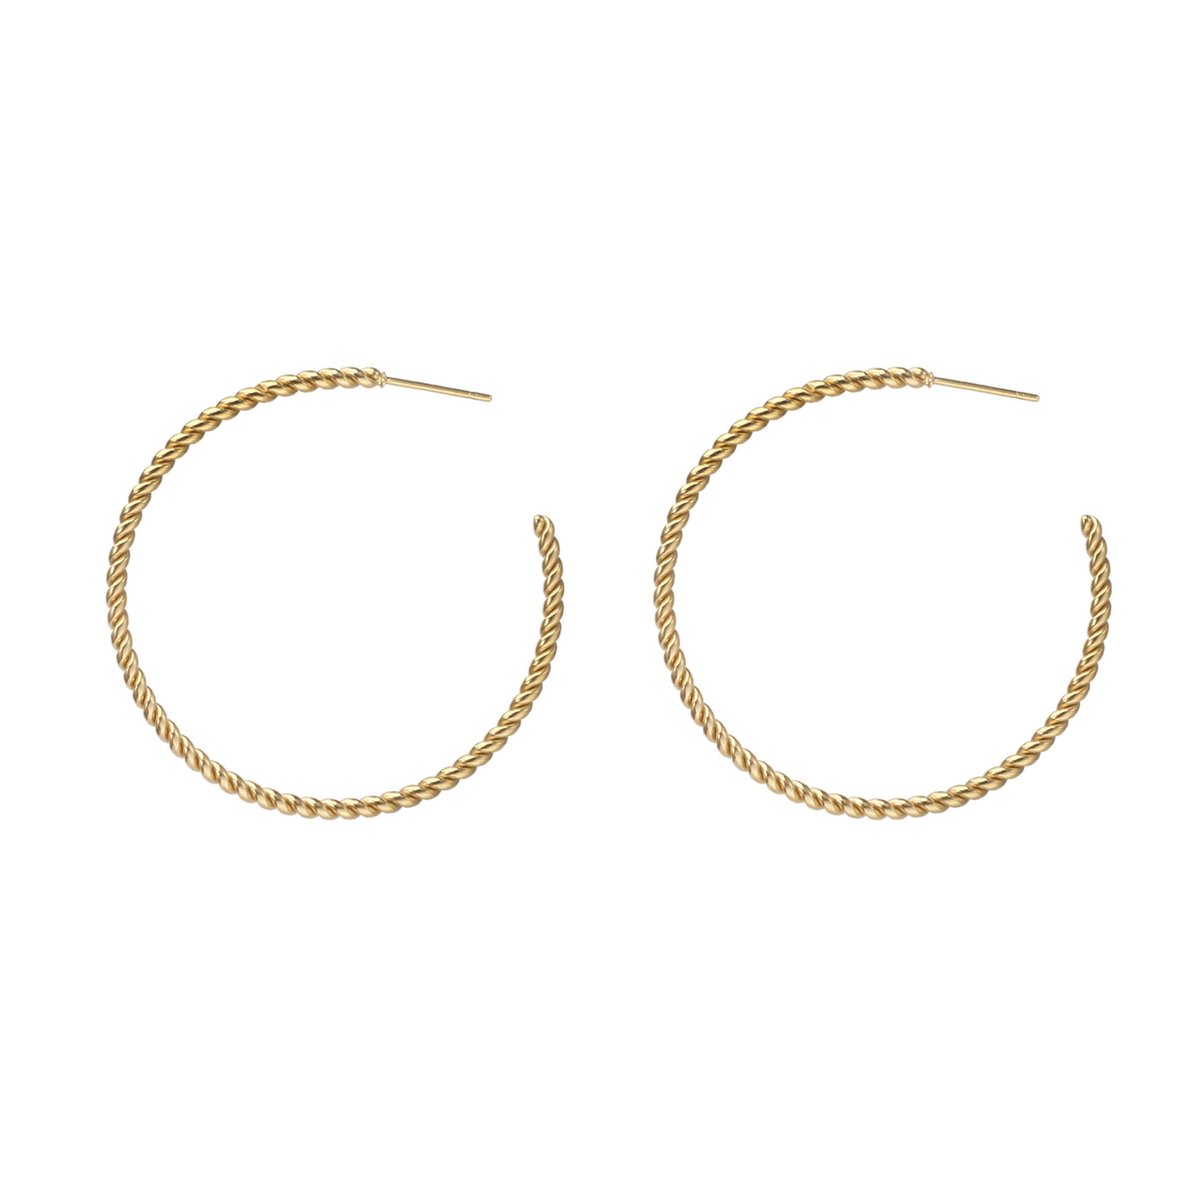 The Jewellery Club - Julia earrings gold - Oorbellen - Dames oorbellen - Tijdloze hoop oorbellen - Stainless steel - Goud - 4 cm